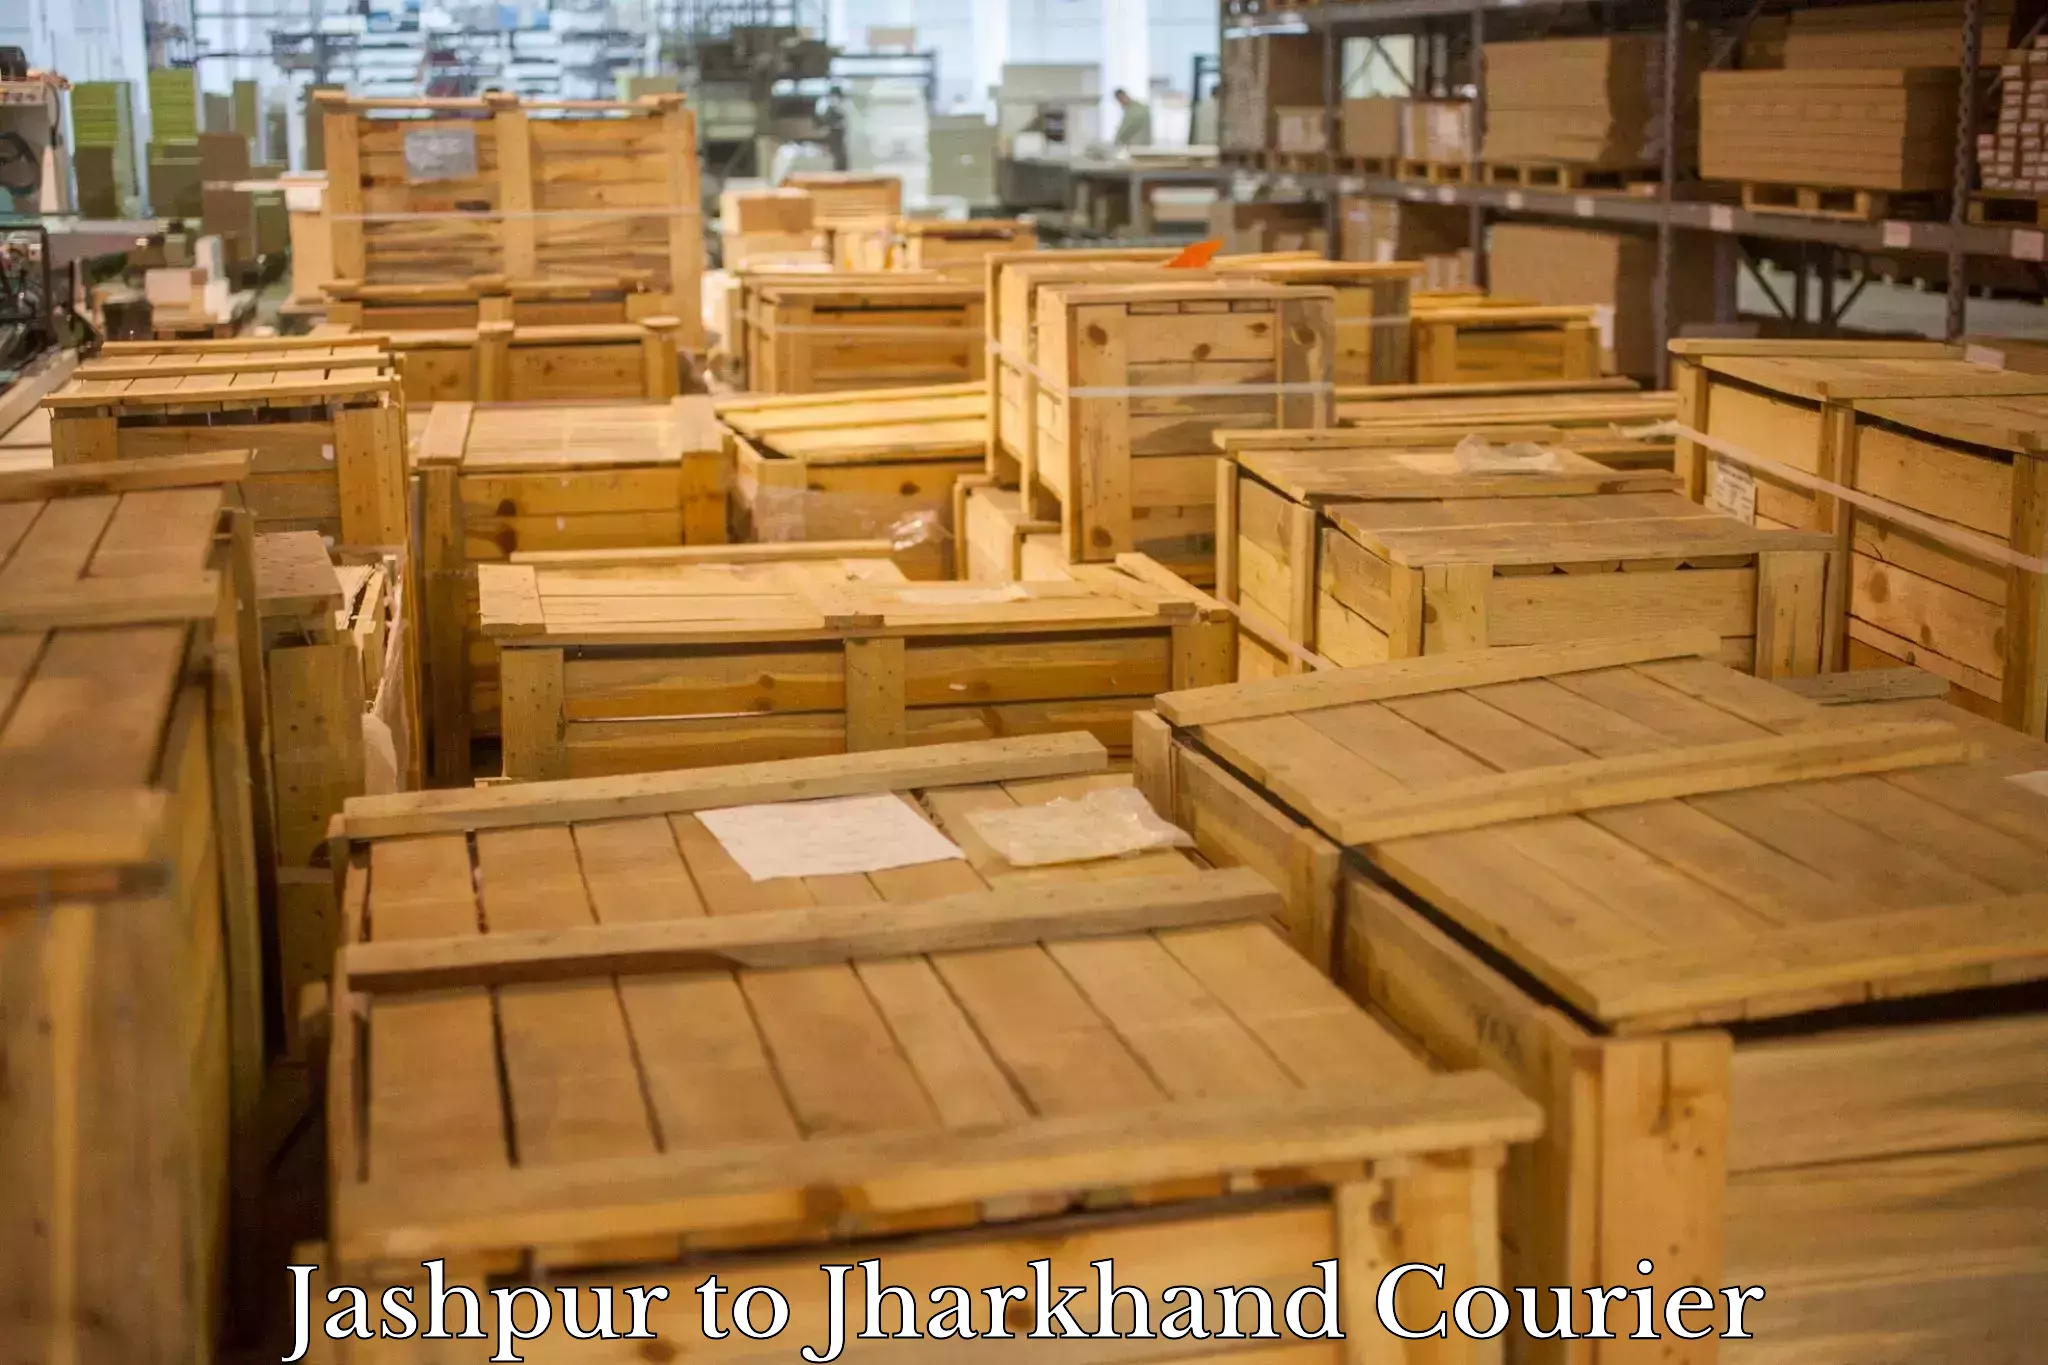 High-capacity parcel service Jashpur to Poreyahat